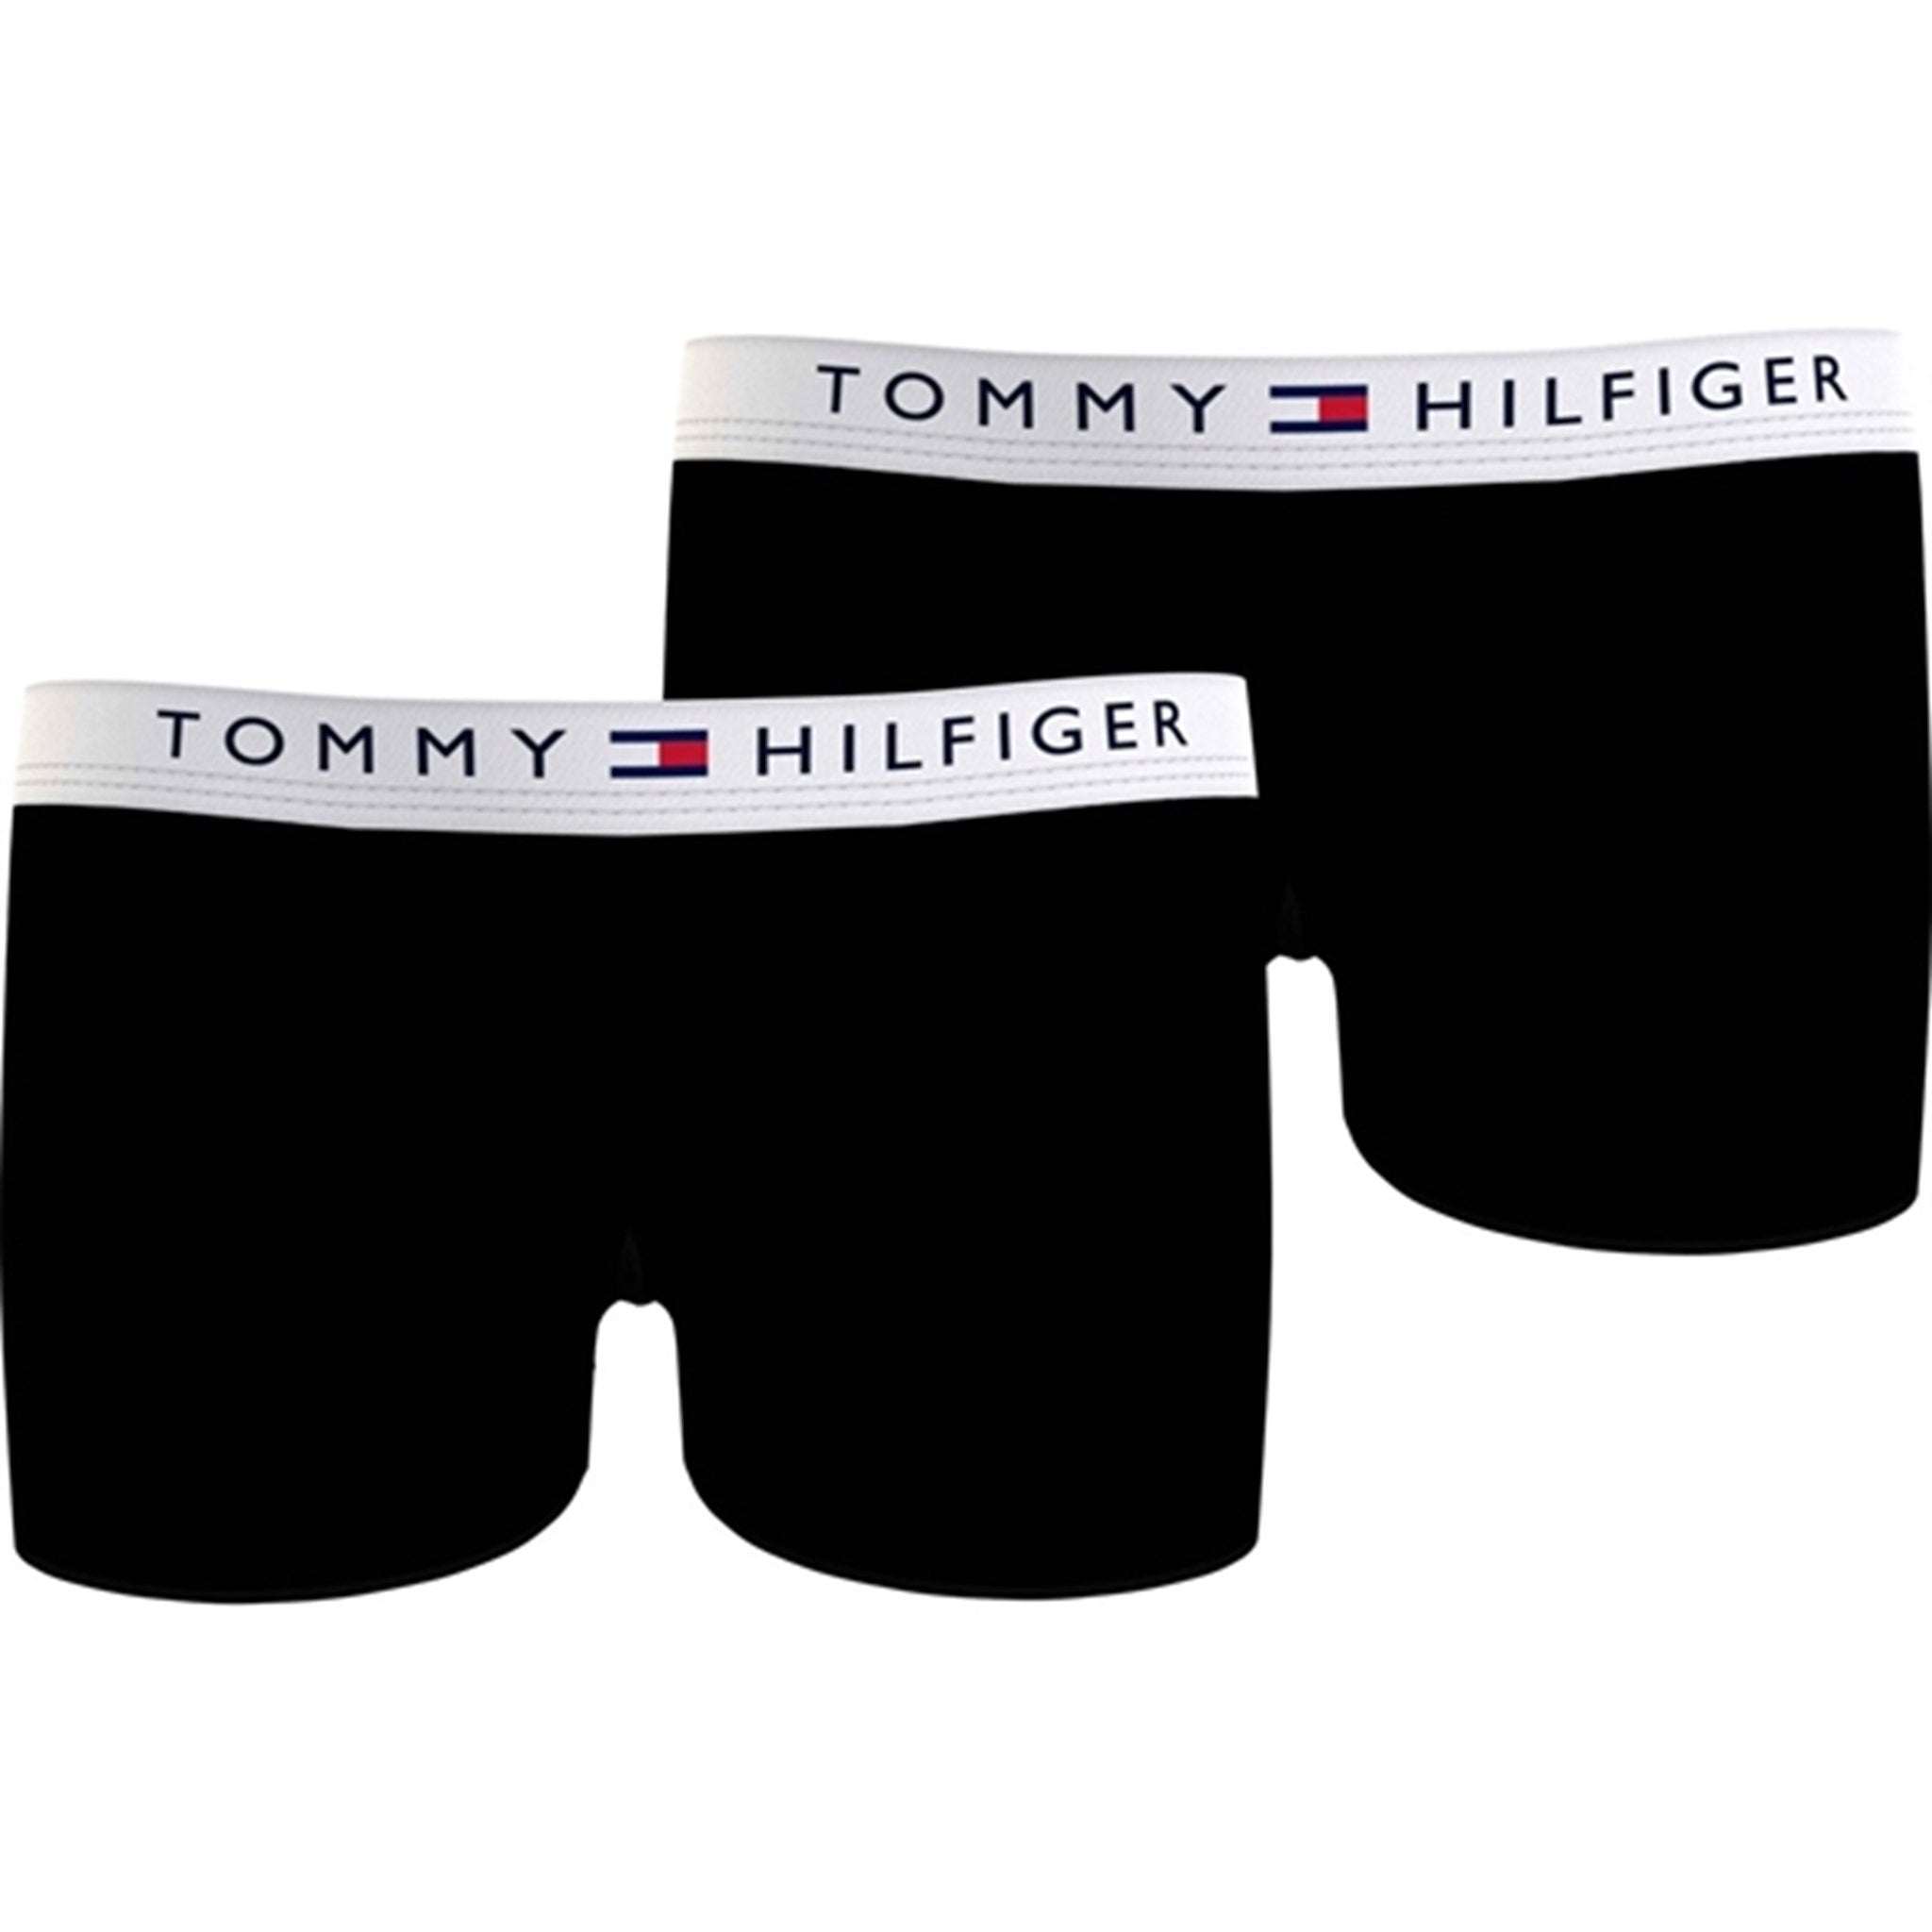 Tommy Hilfiger Trunks 2-Pack Black / Black